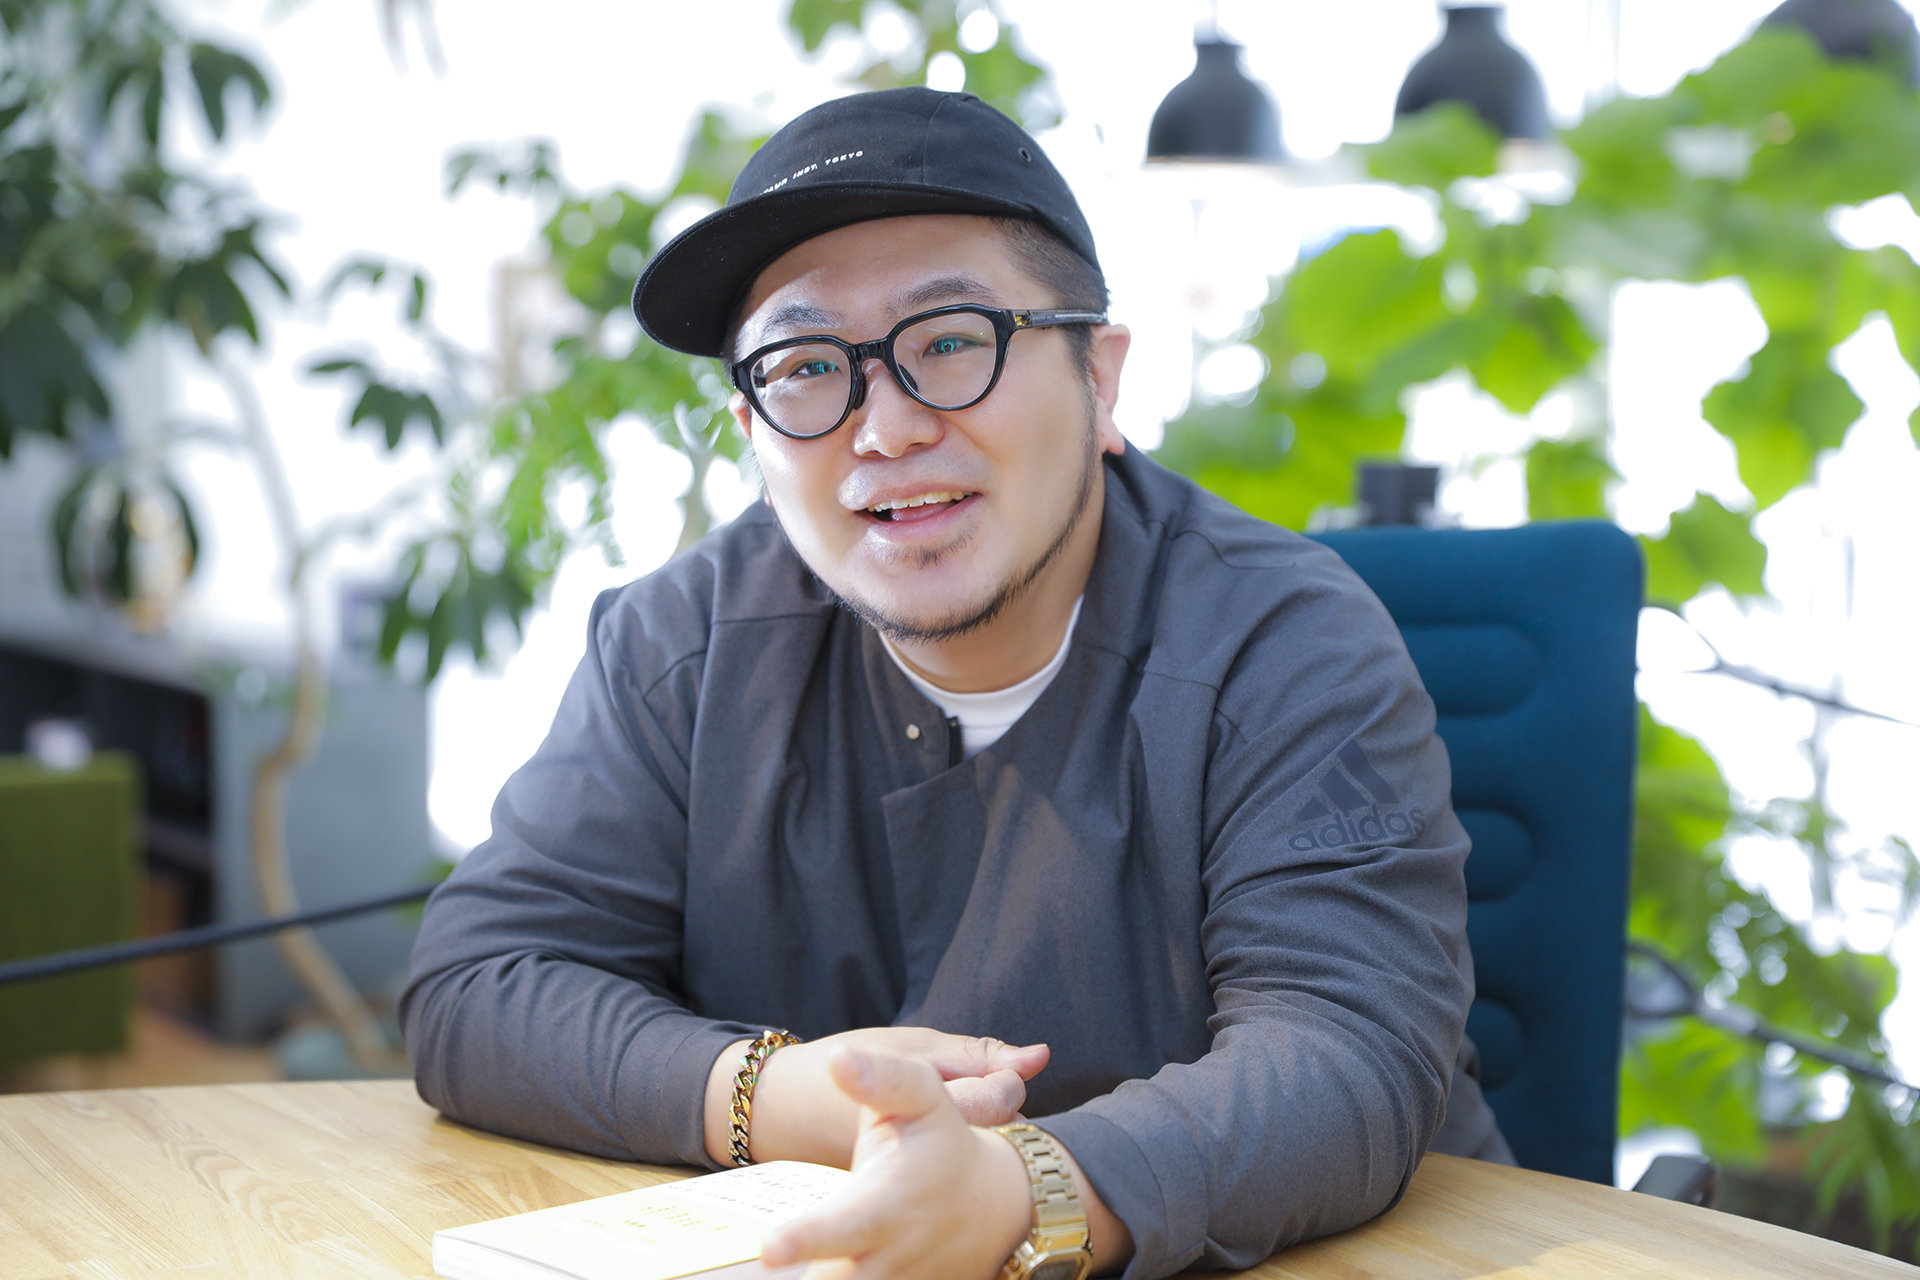 広告業界の風雲児、GO三浦崇宏さんに聞く「若手社員と信頼を築くためのマネジメント術」